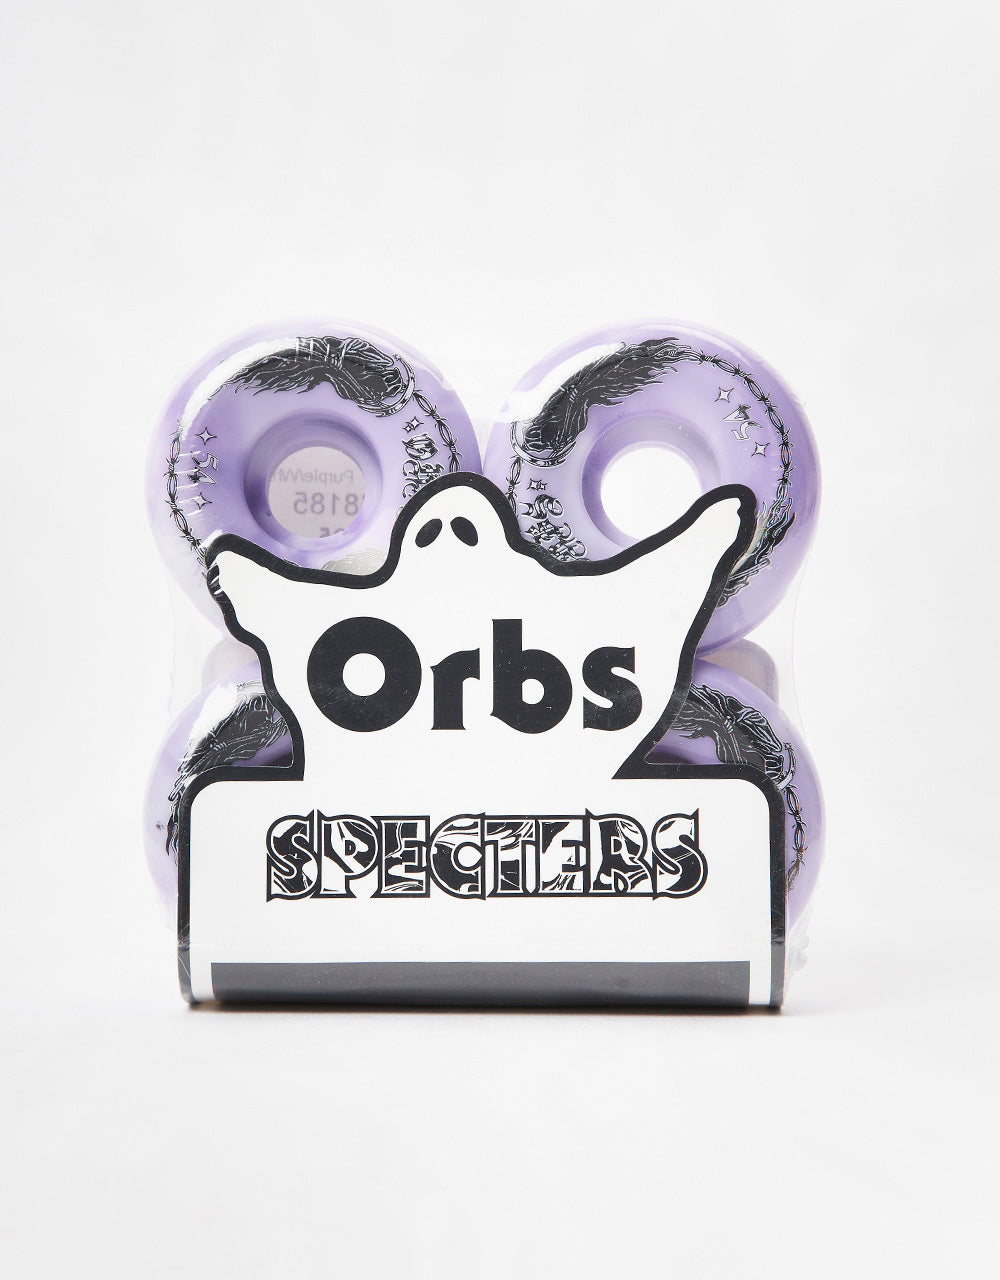 Orbs Specters Swirls Conical 99a Skateboard Wheels - 54mm